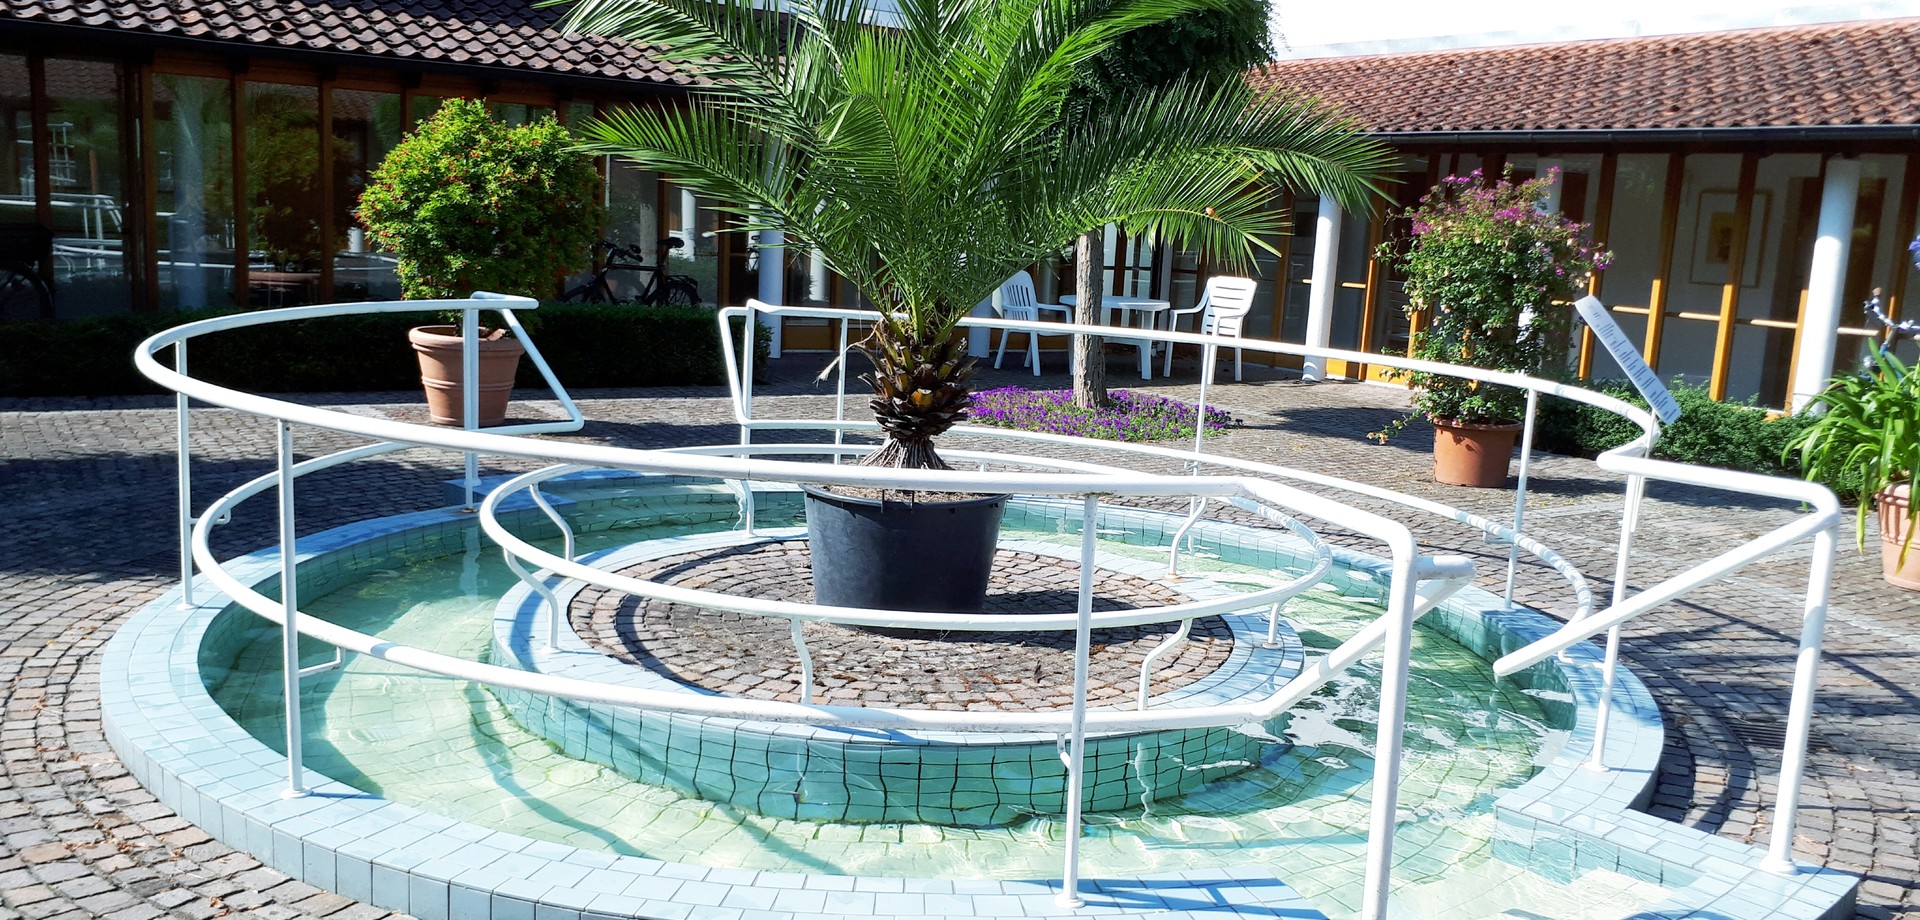 Kneippbecken: Mittig steht eine grüne Palme inmitten eines kreisförmigen Beckens, mit weißem Geländer, dahinter zwei weiße Stühle vor einem Gebäude